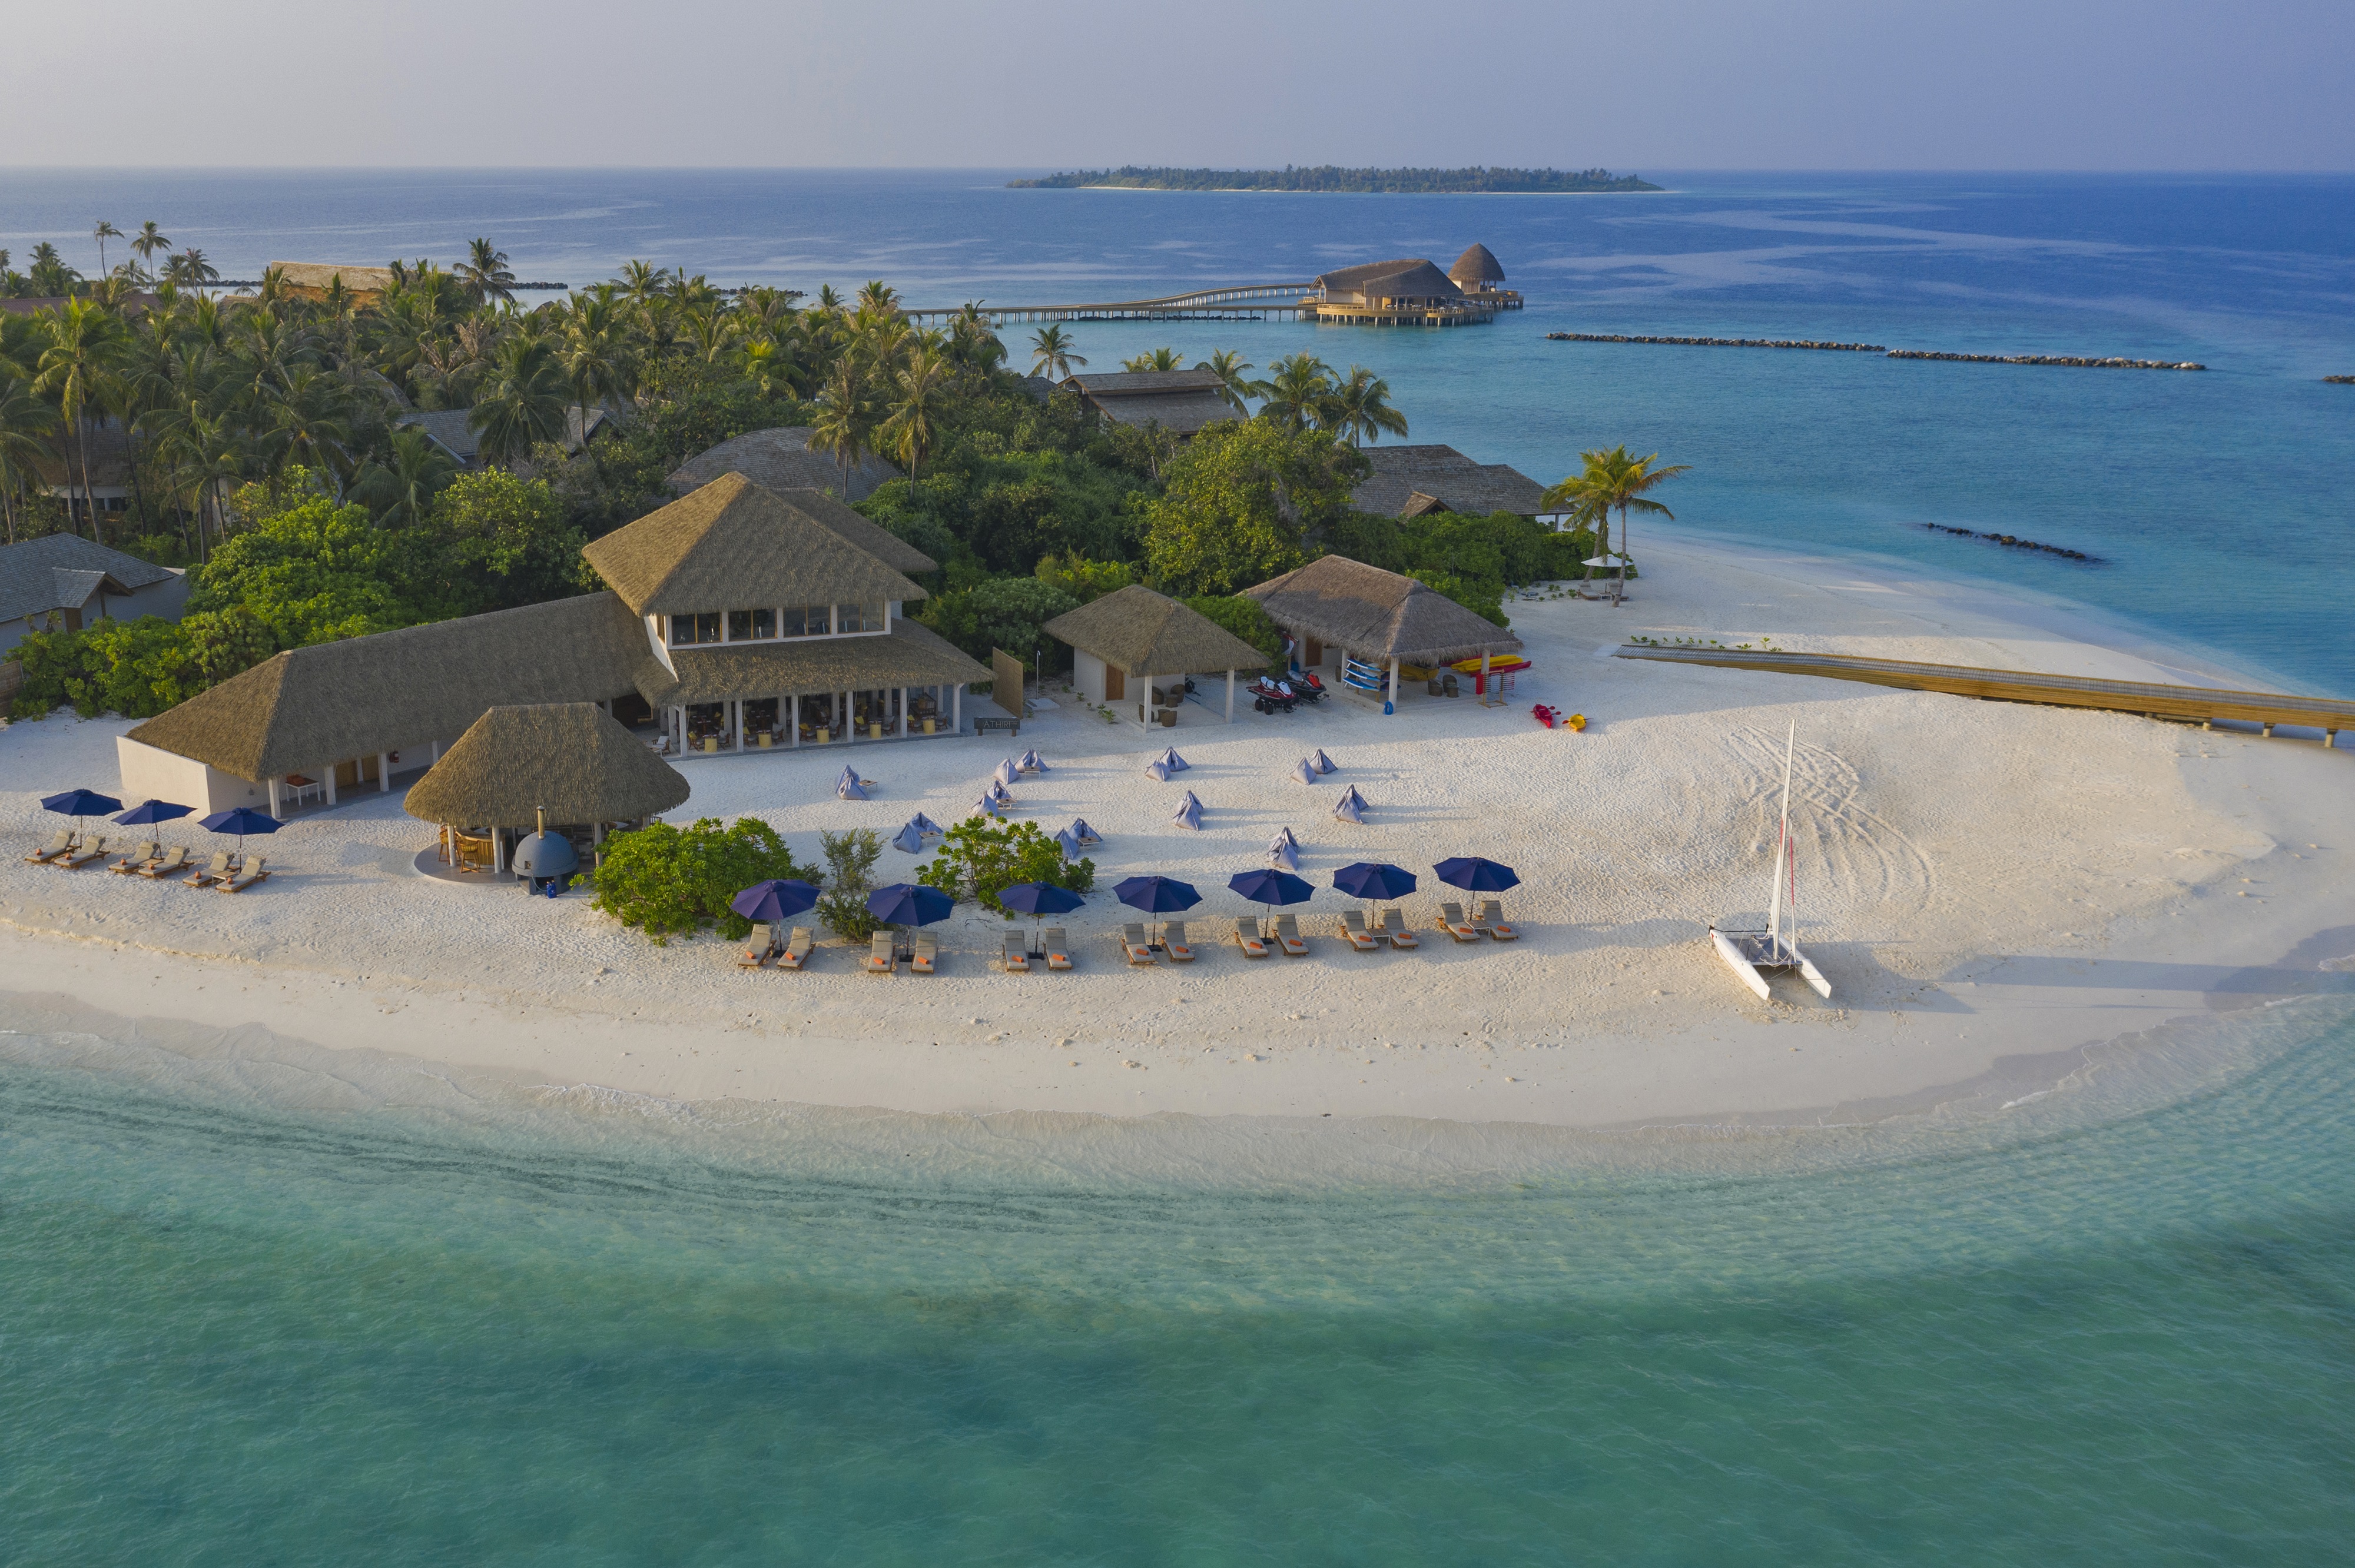 Fotografija Faarufushi Resort island priljubljeno mesto med poznavalci sprostitve